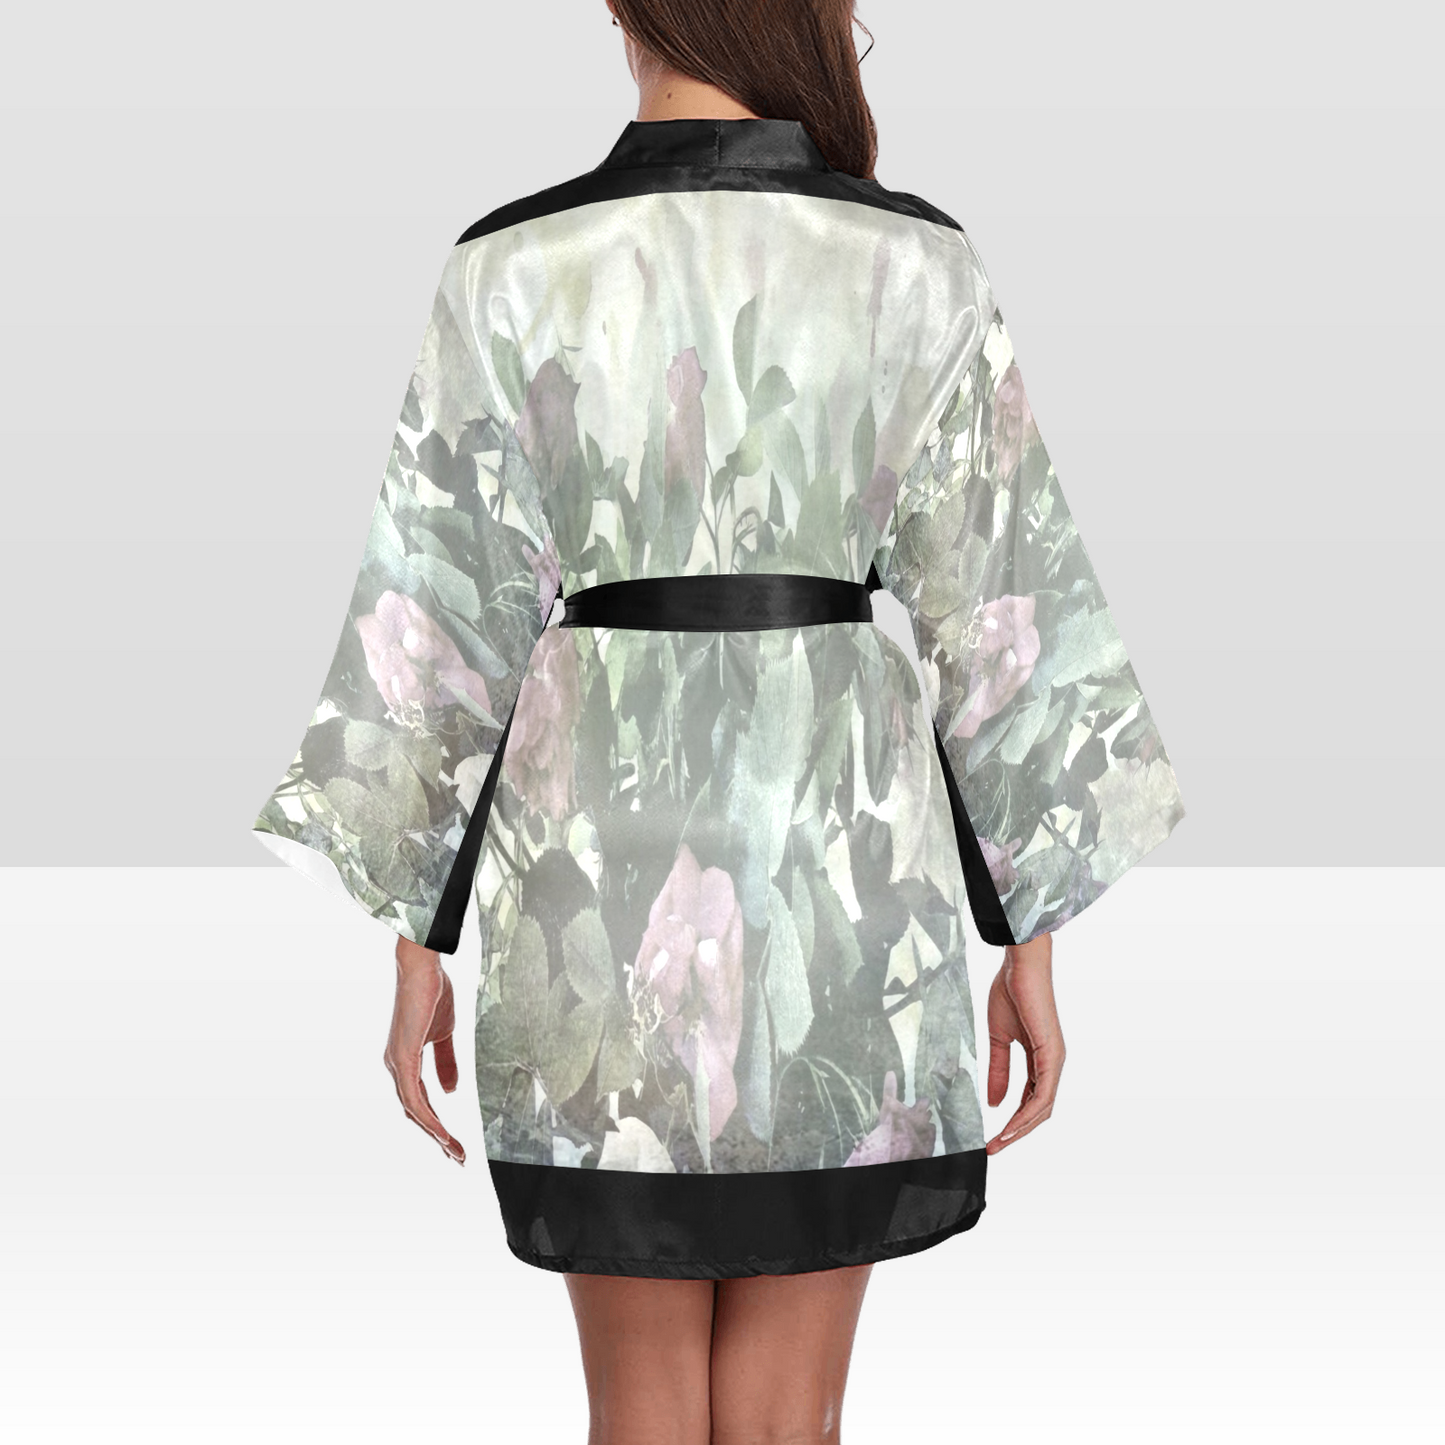 Vintage Floral Kimono Robe, Black or White Trim, Sizes XS to 2XL, Design 23